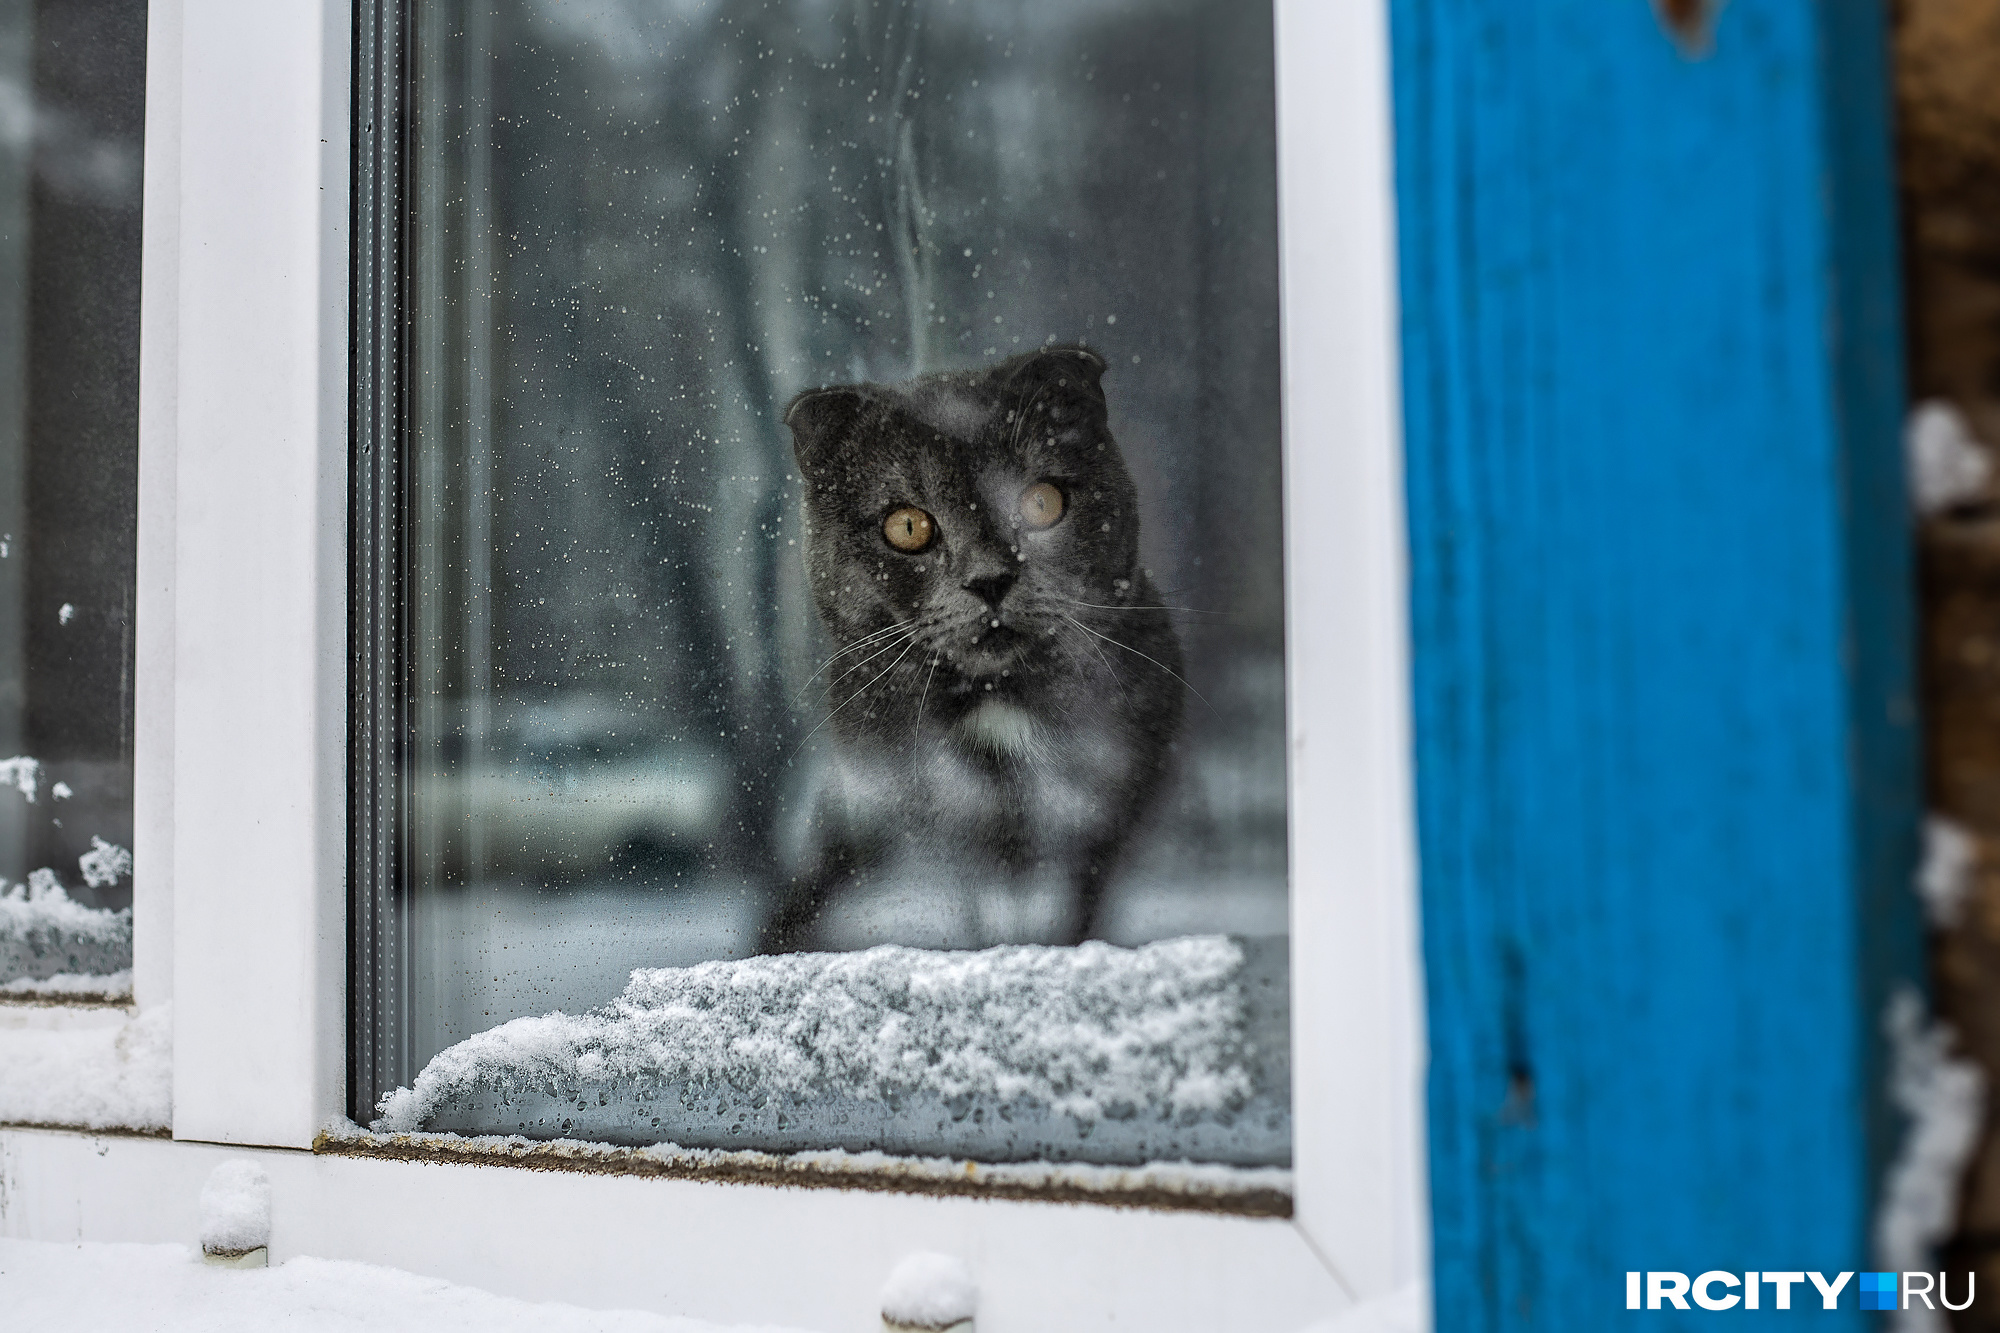 В феврале надо присматривать за кошками — они подскажут, какая будет погода